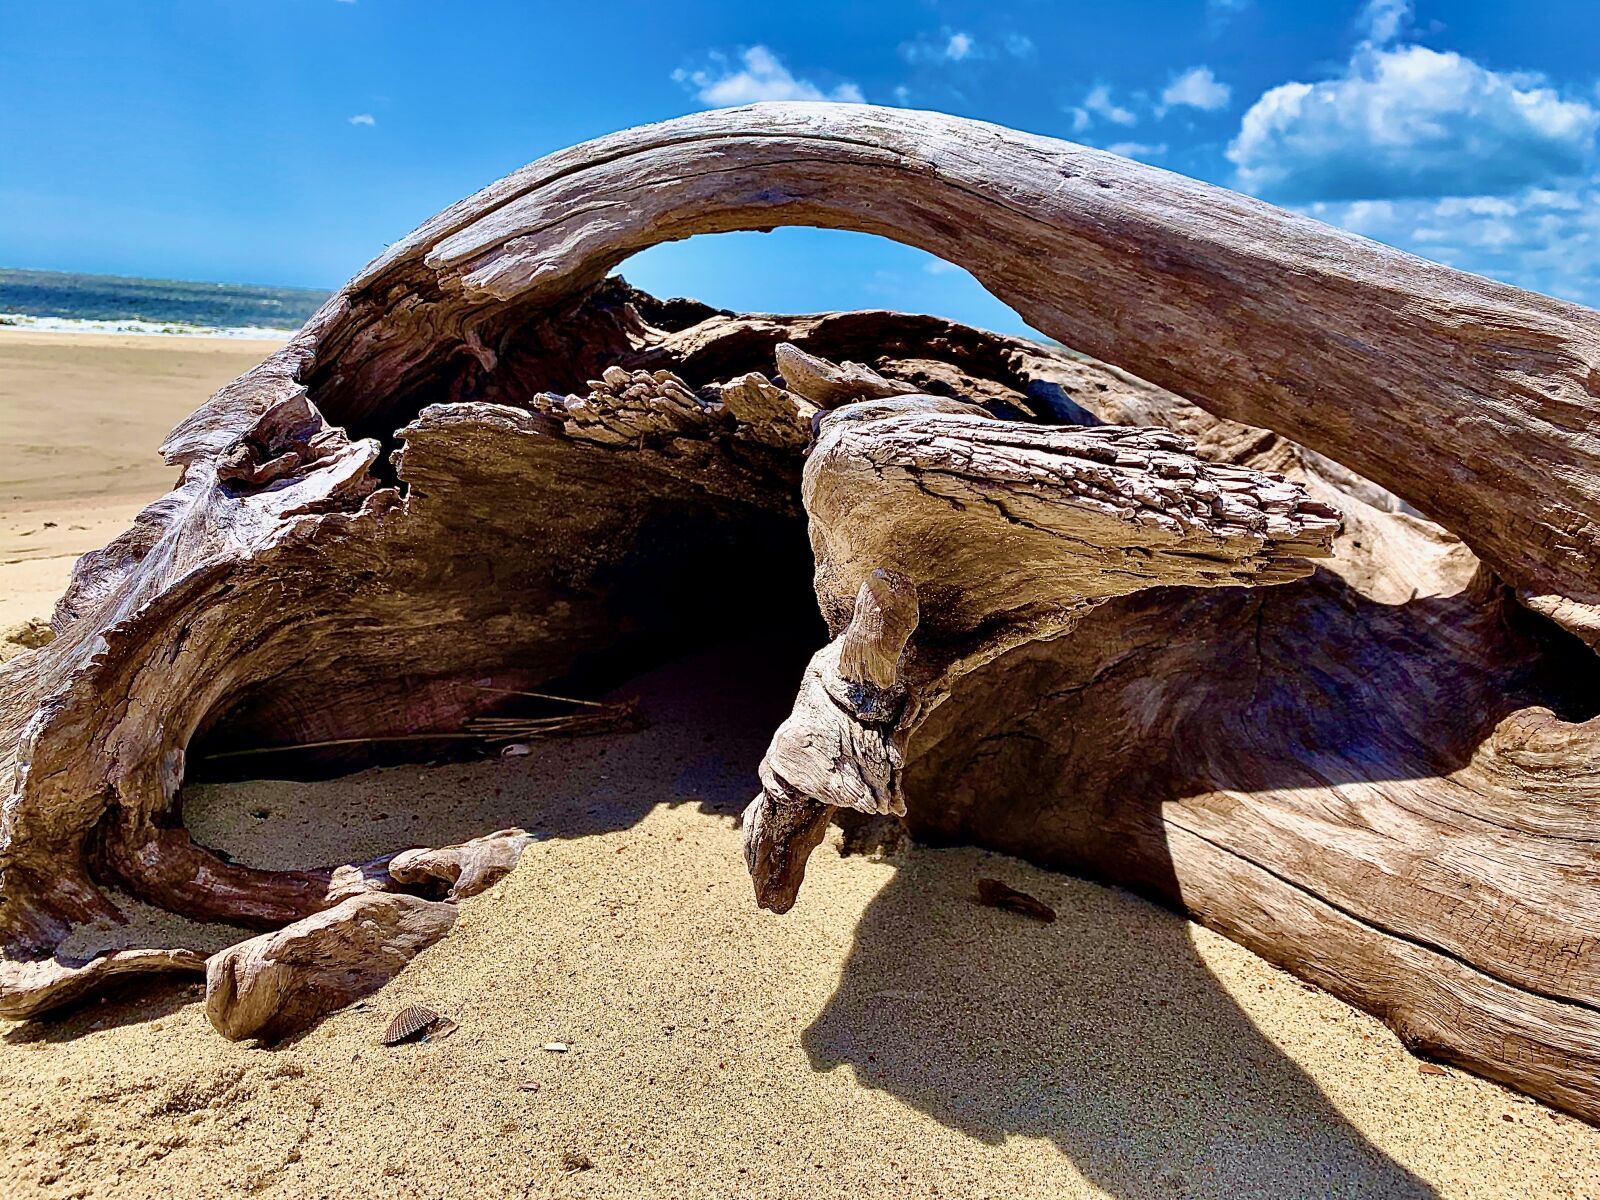 Apple iPhone XR sample photo. Driftwood, beach, sky photography